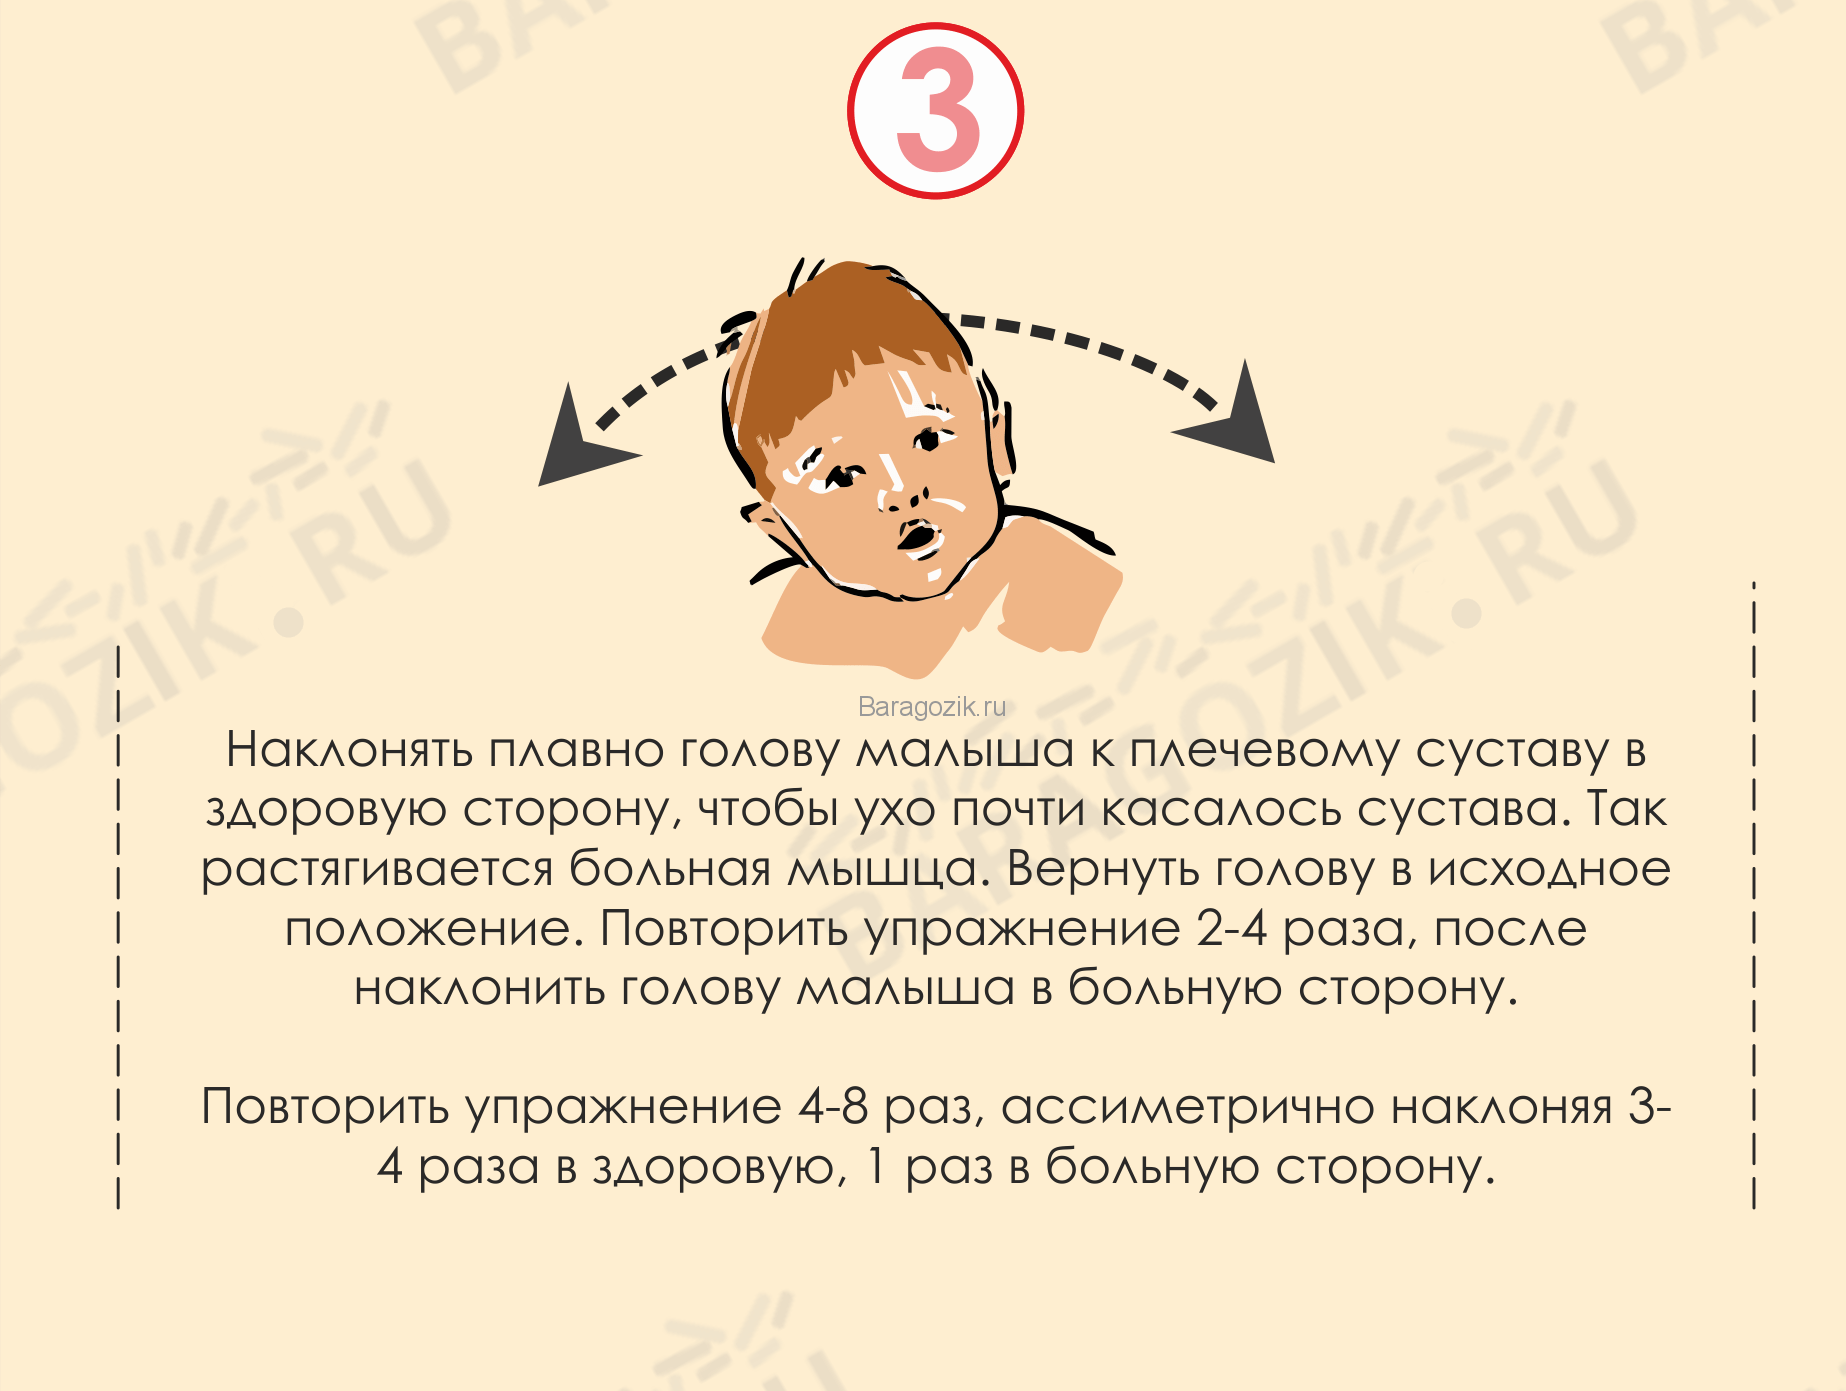 Боли в шее у ребенка | что делать, если болит шея у детей? | лечение боли и симптомы болезни на eurolab